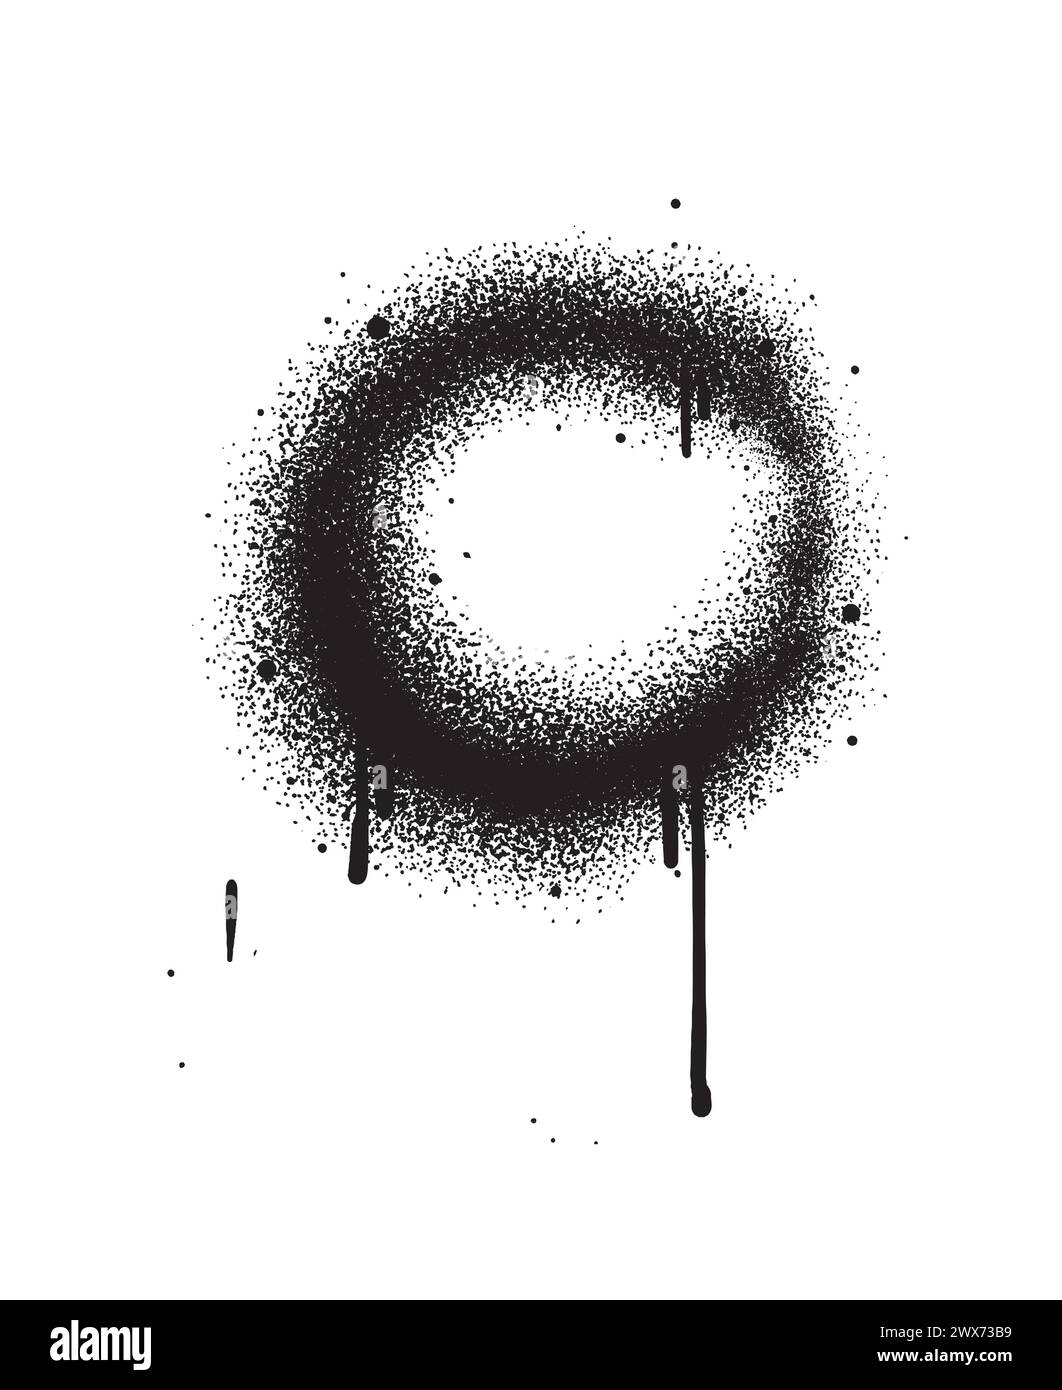 Elemento di design Graffiti Circle Spray in nero isolato su sfondo bianco. Illustrazione vettoriale. Illustrazione Vettoriale